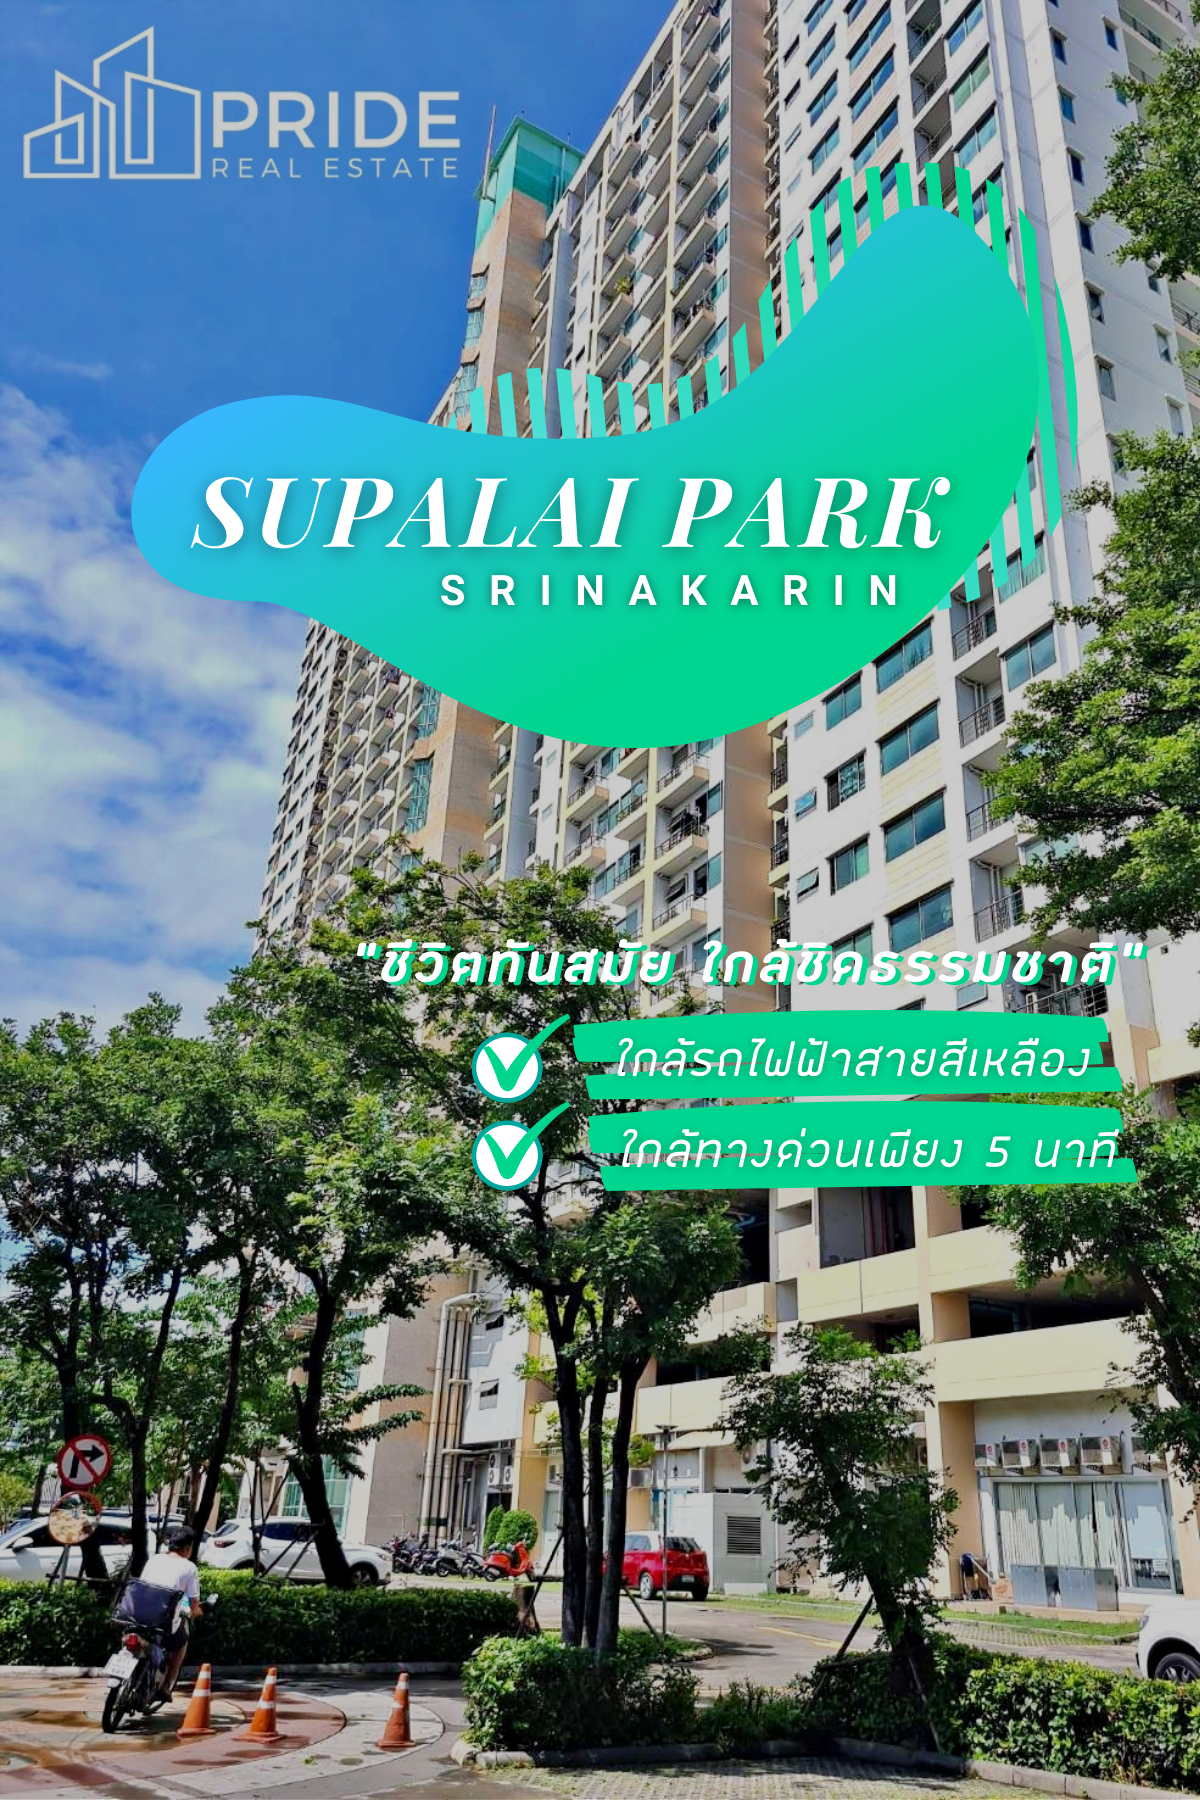 ขายคอนโดศุภาลัย ปาร์ค ศรีนครินทร์  (FOR SALE Supalai Park Srinakarin Condominium)